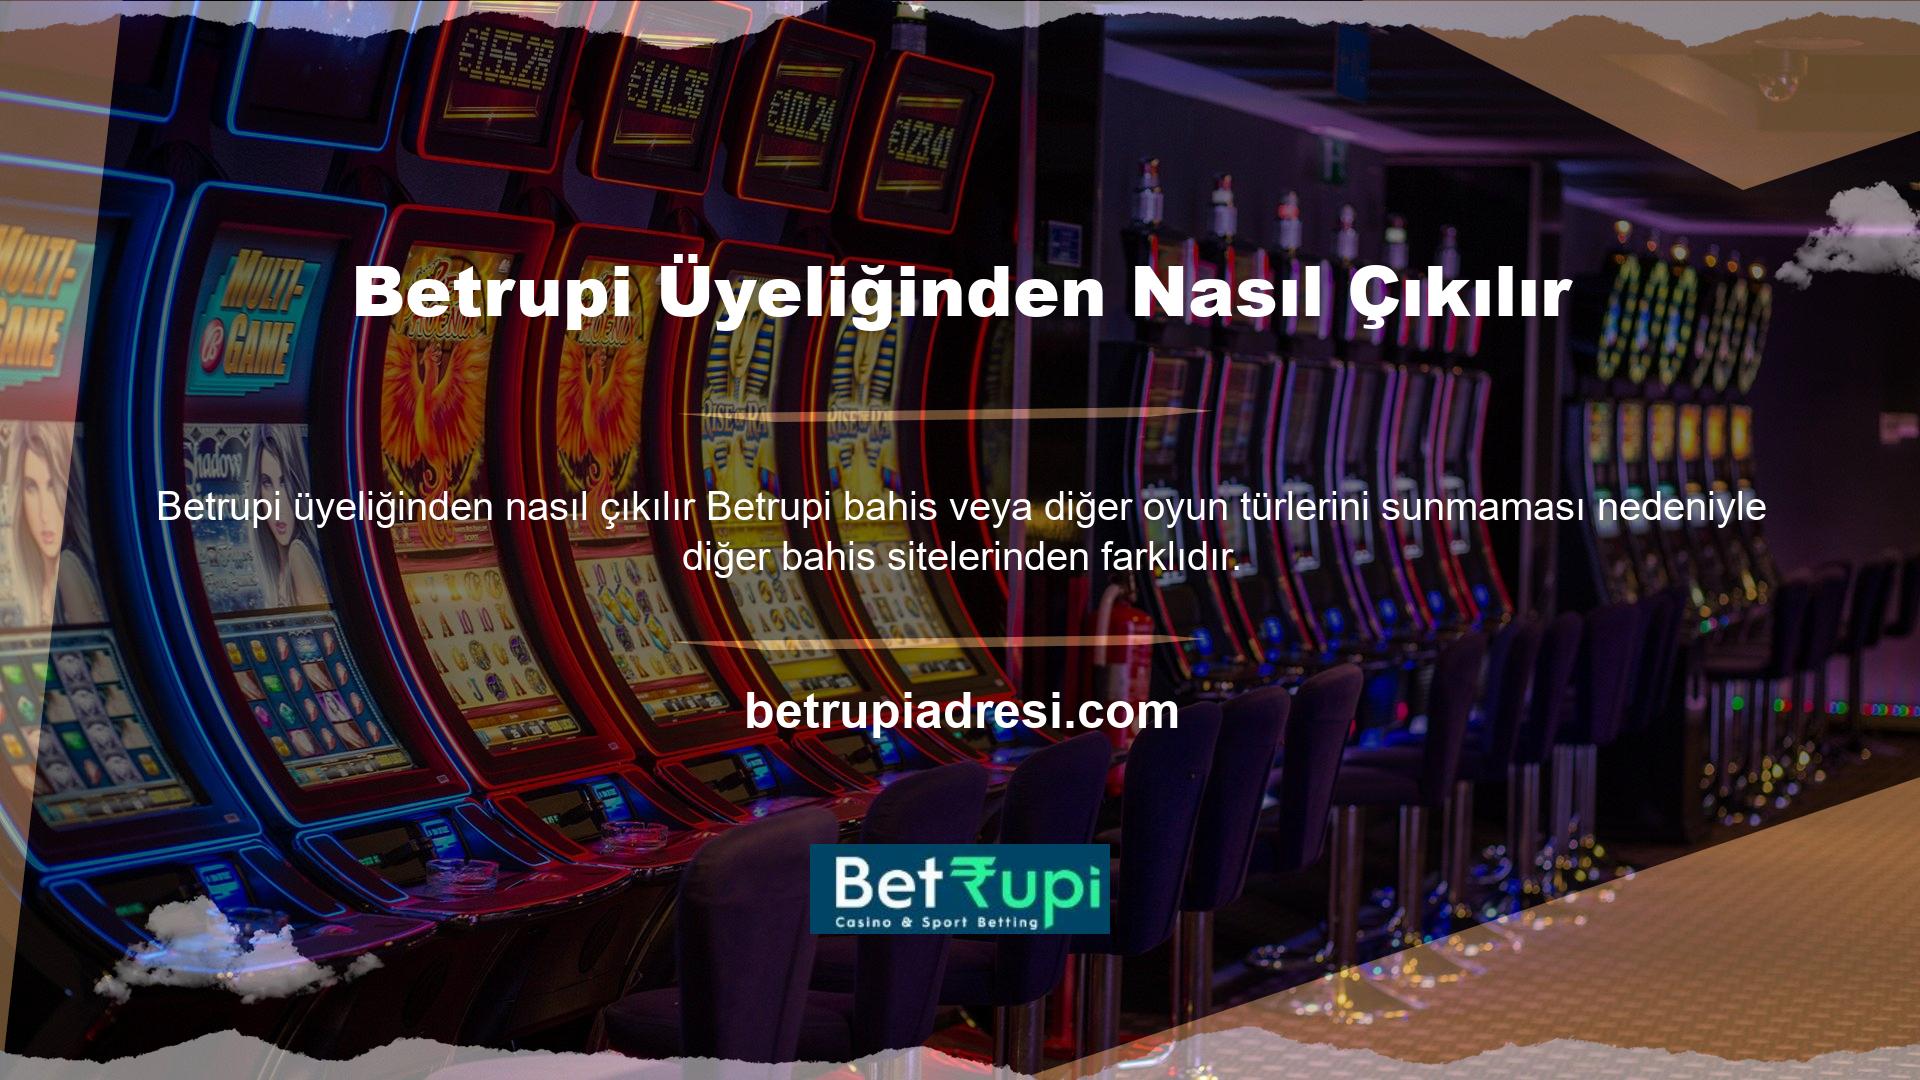 Web sitesi, casino oyunları oynamaktan hoşlanan kişilere özel olarak tasarlanmış ve onlara kapsamlı bir sanal casino deneyimi sunmaktadır